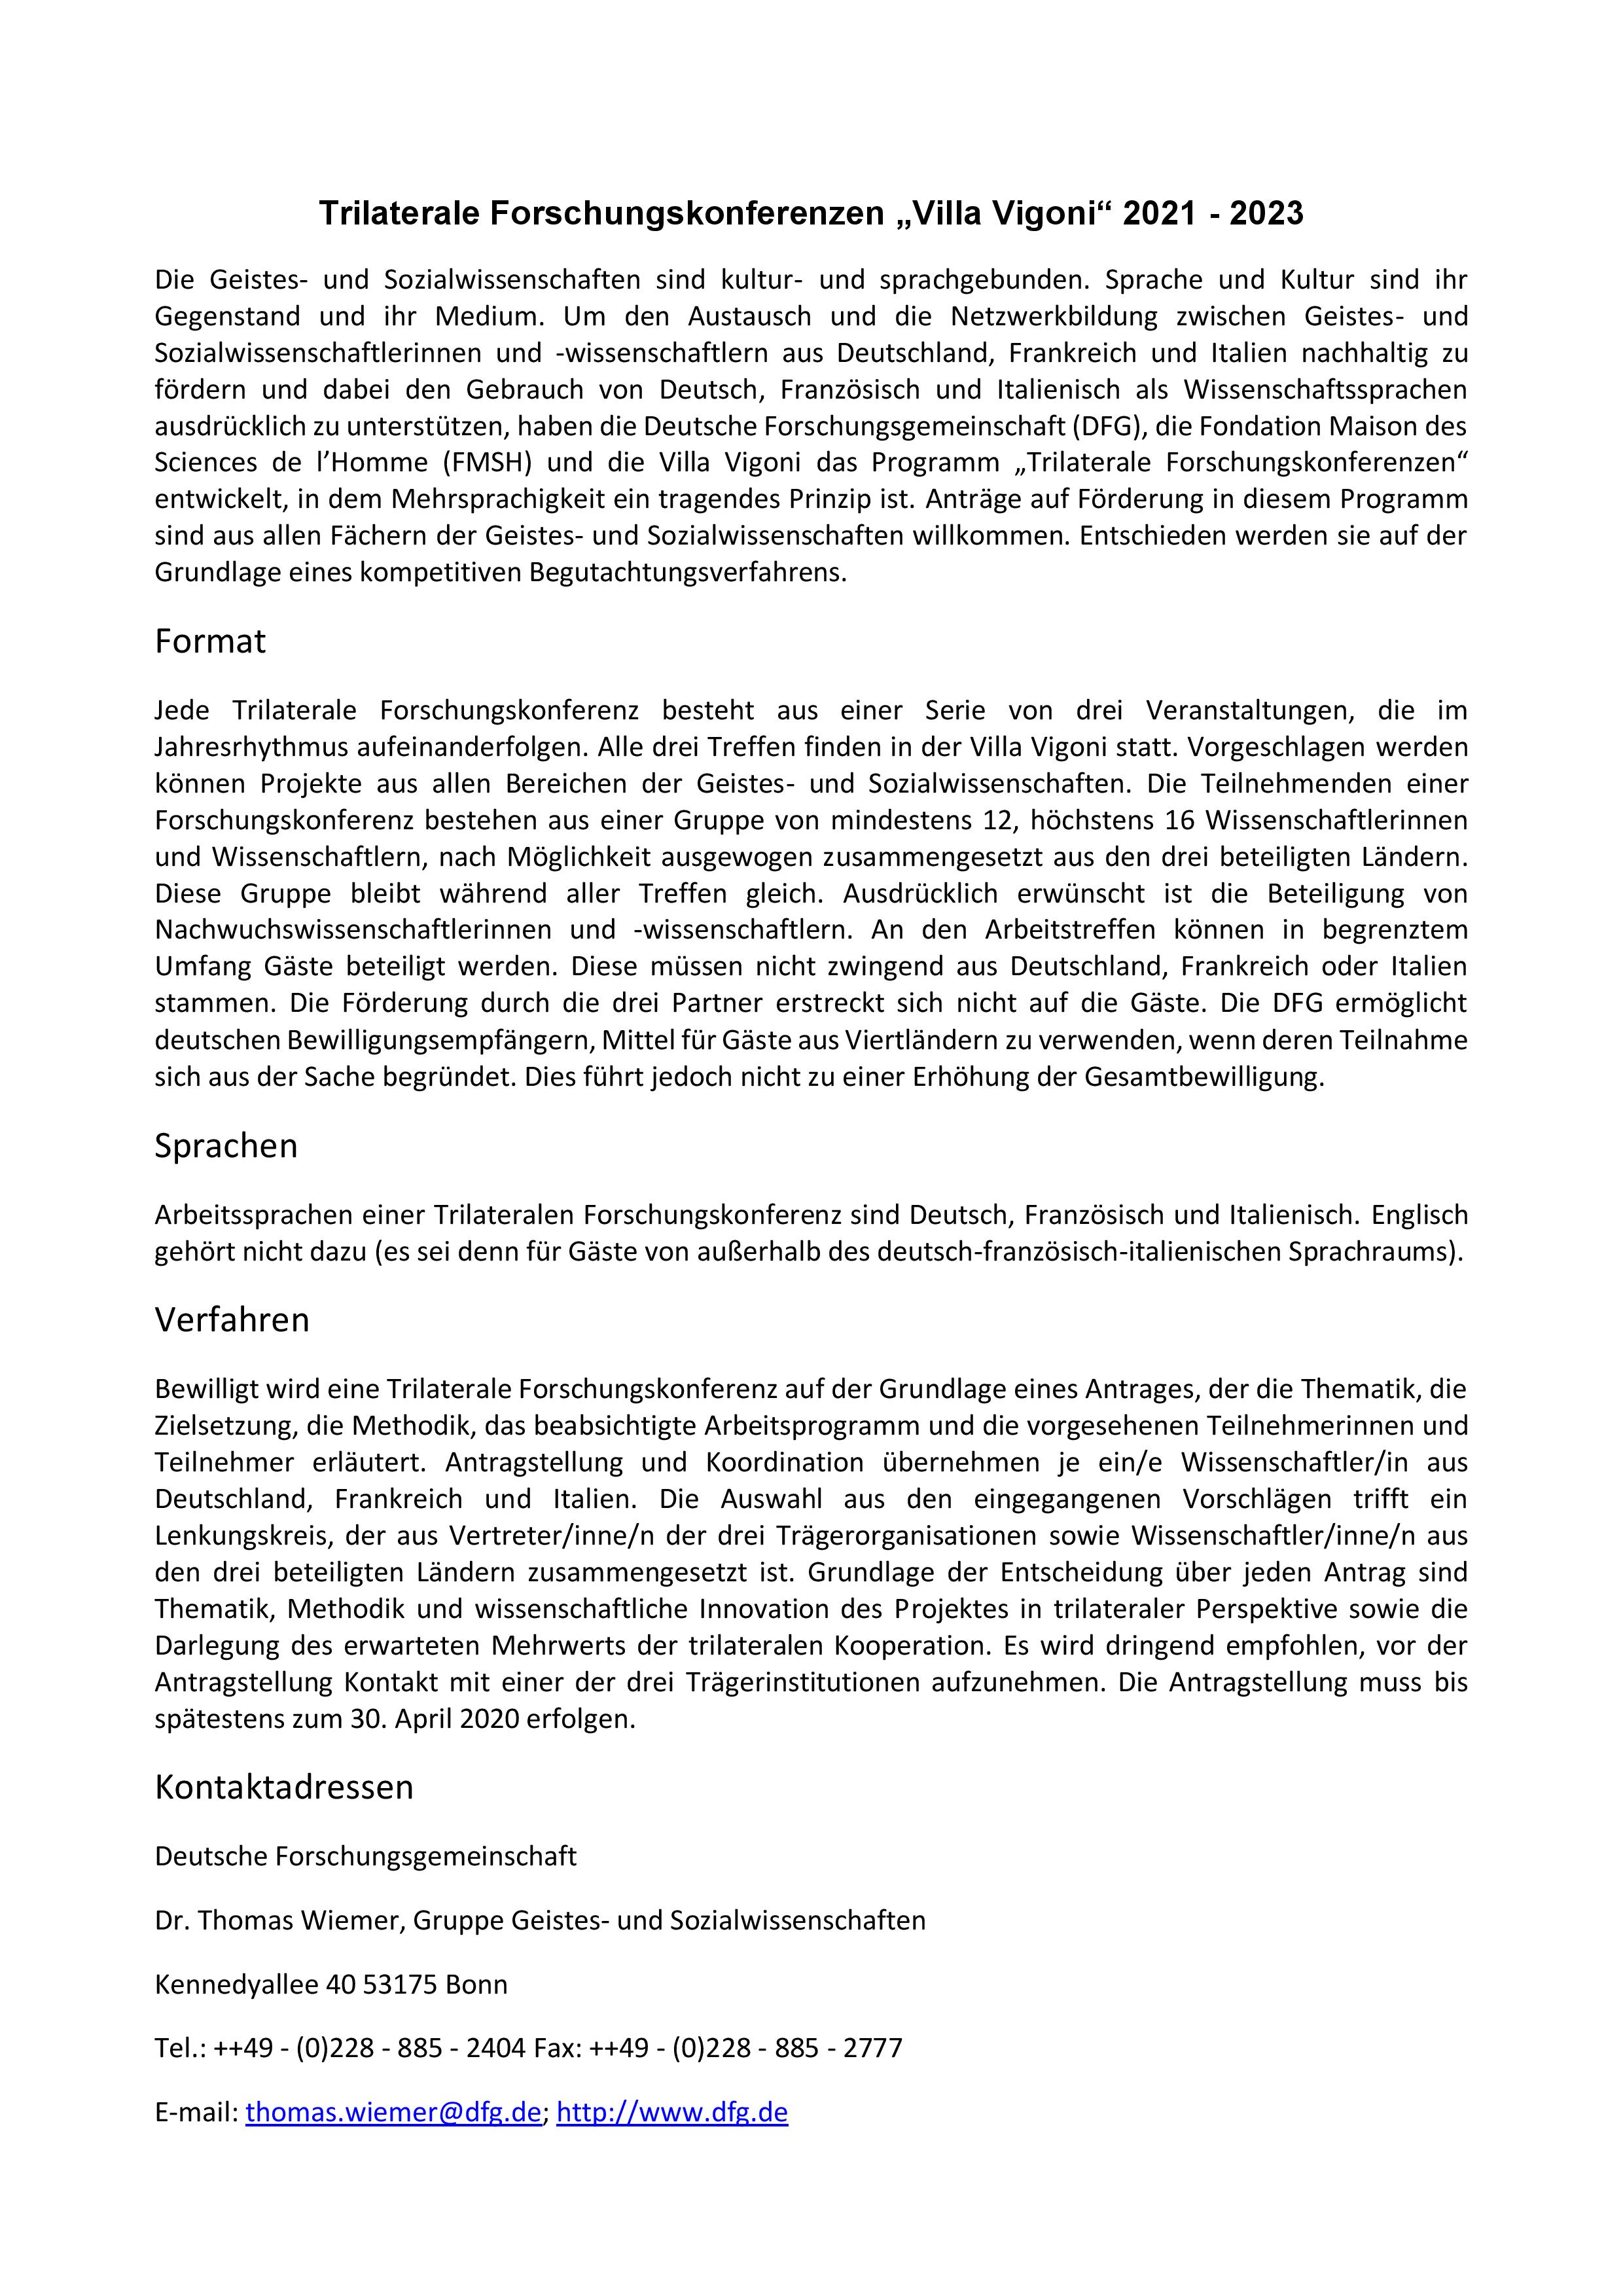 Conferenze-di-ricerca-trilaterali_2021-2023__BANDO-page-006